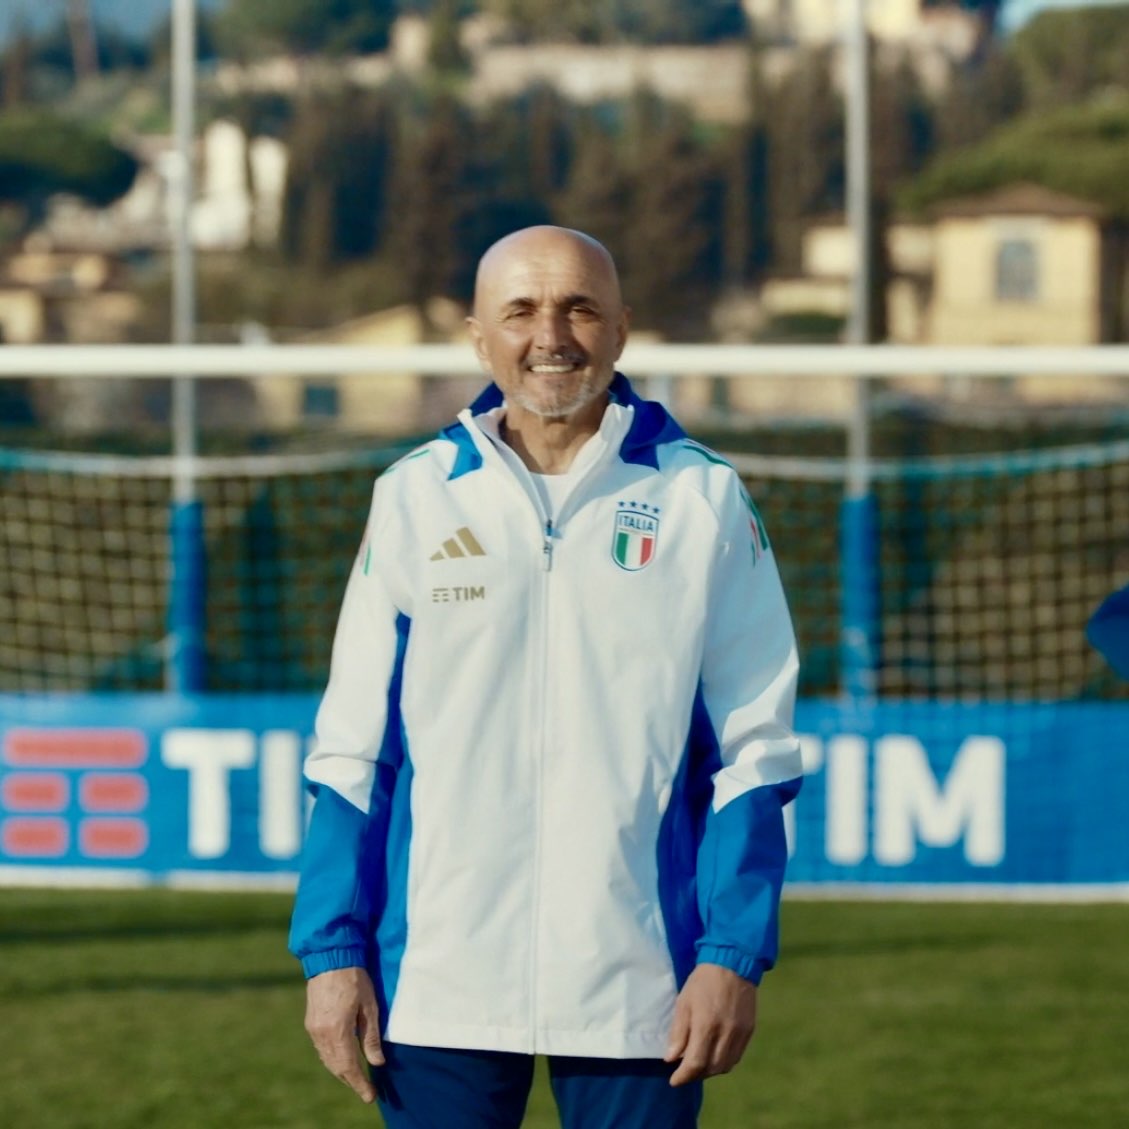 Comercial TIM - Com Luciano Spalletti e a “Azzurri” da seleção nacional